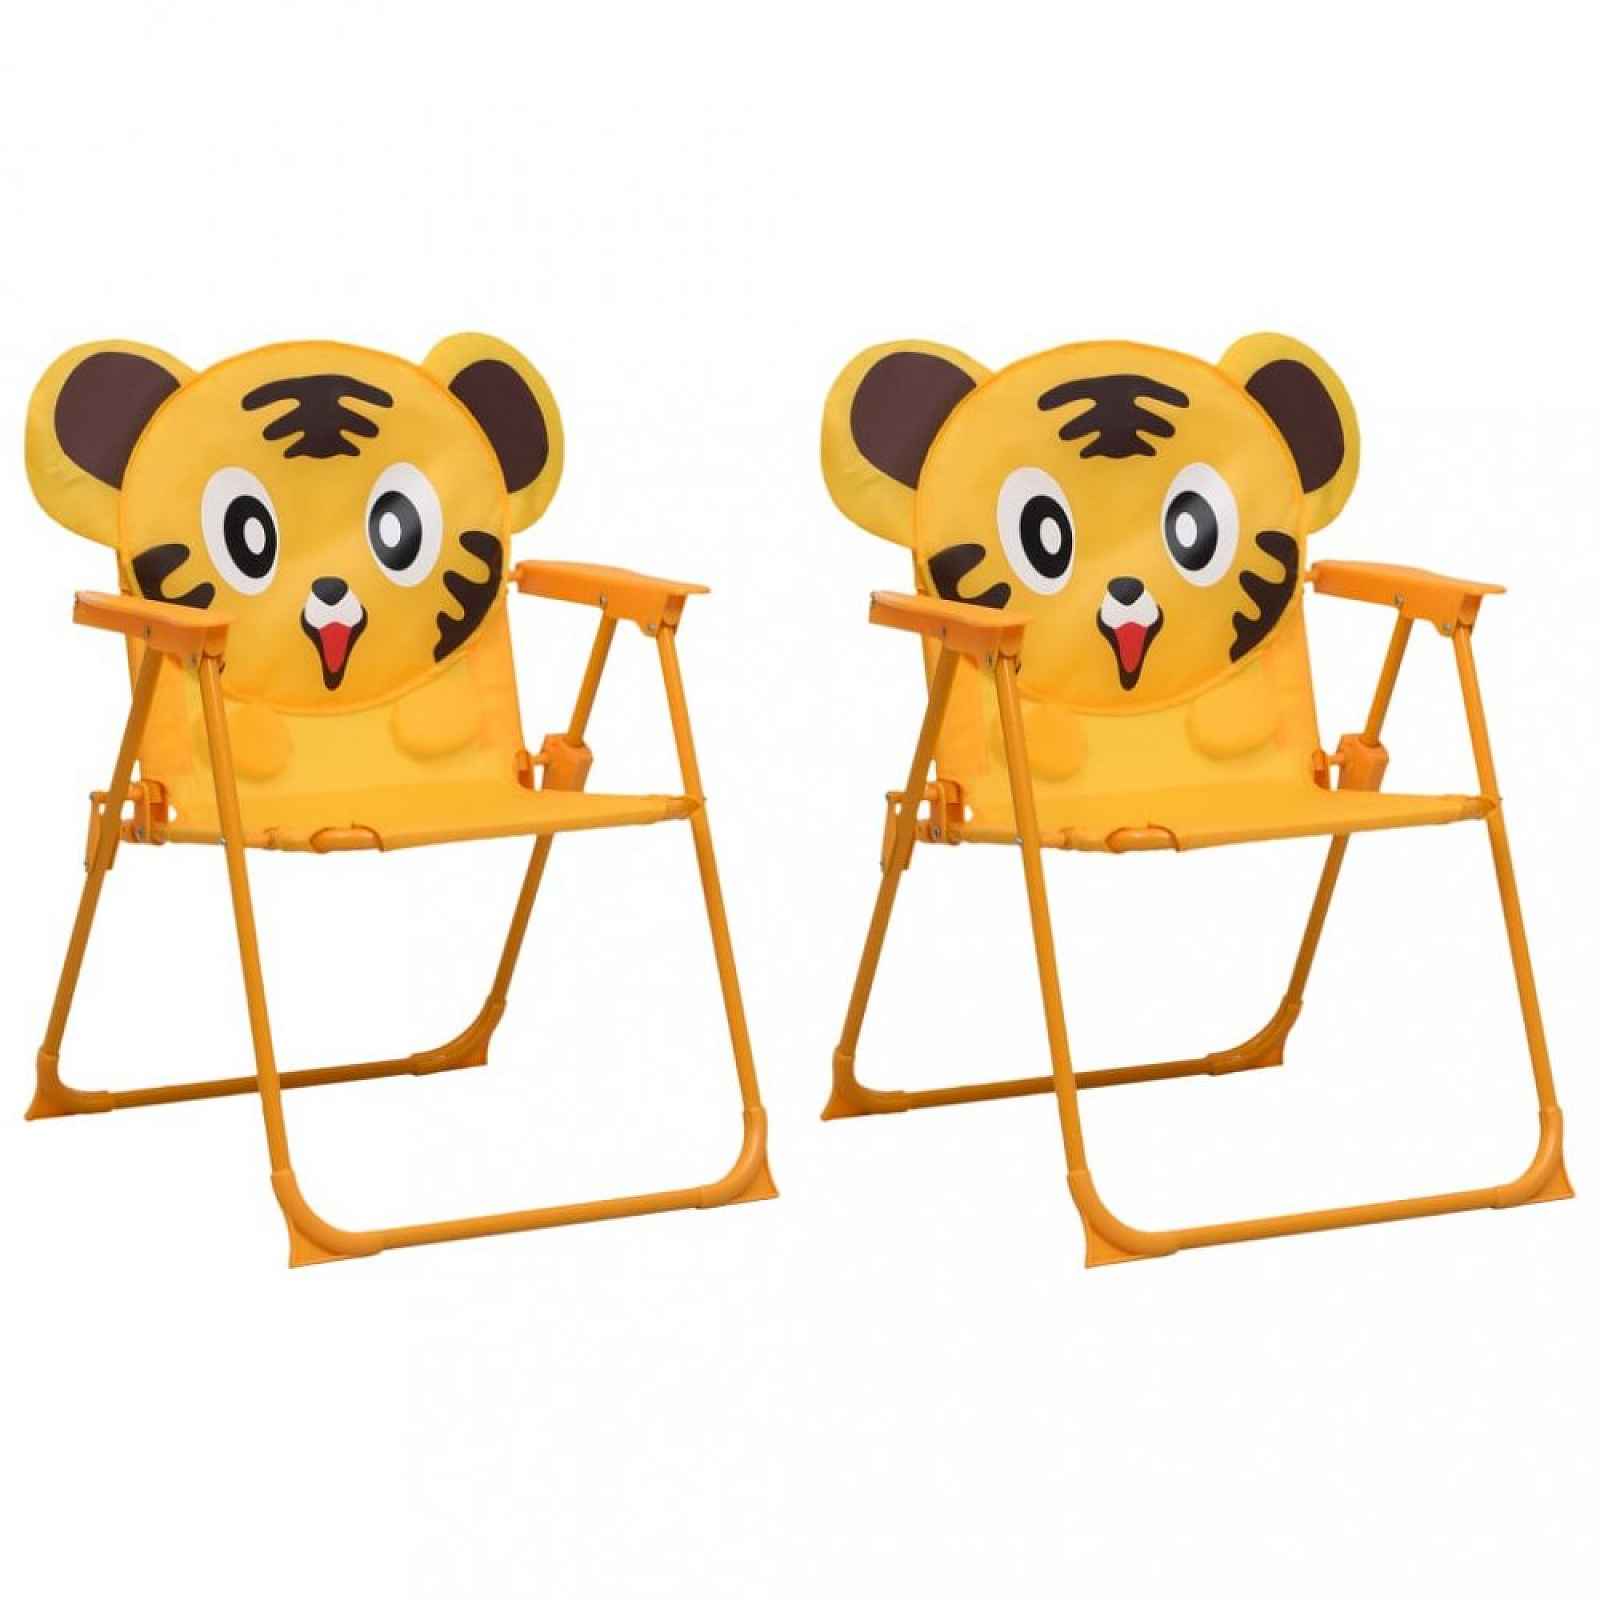 Dětské zahradní židle 2 ks Žlutá